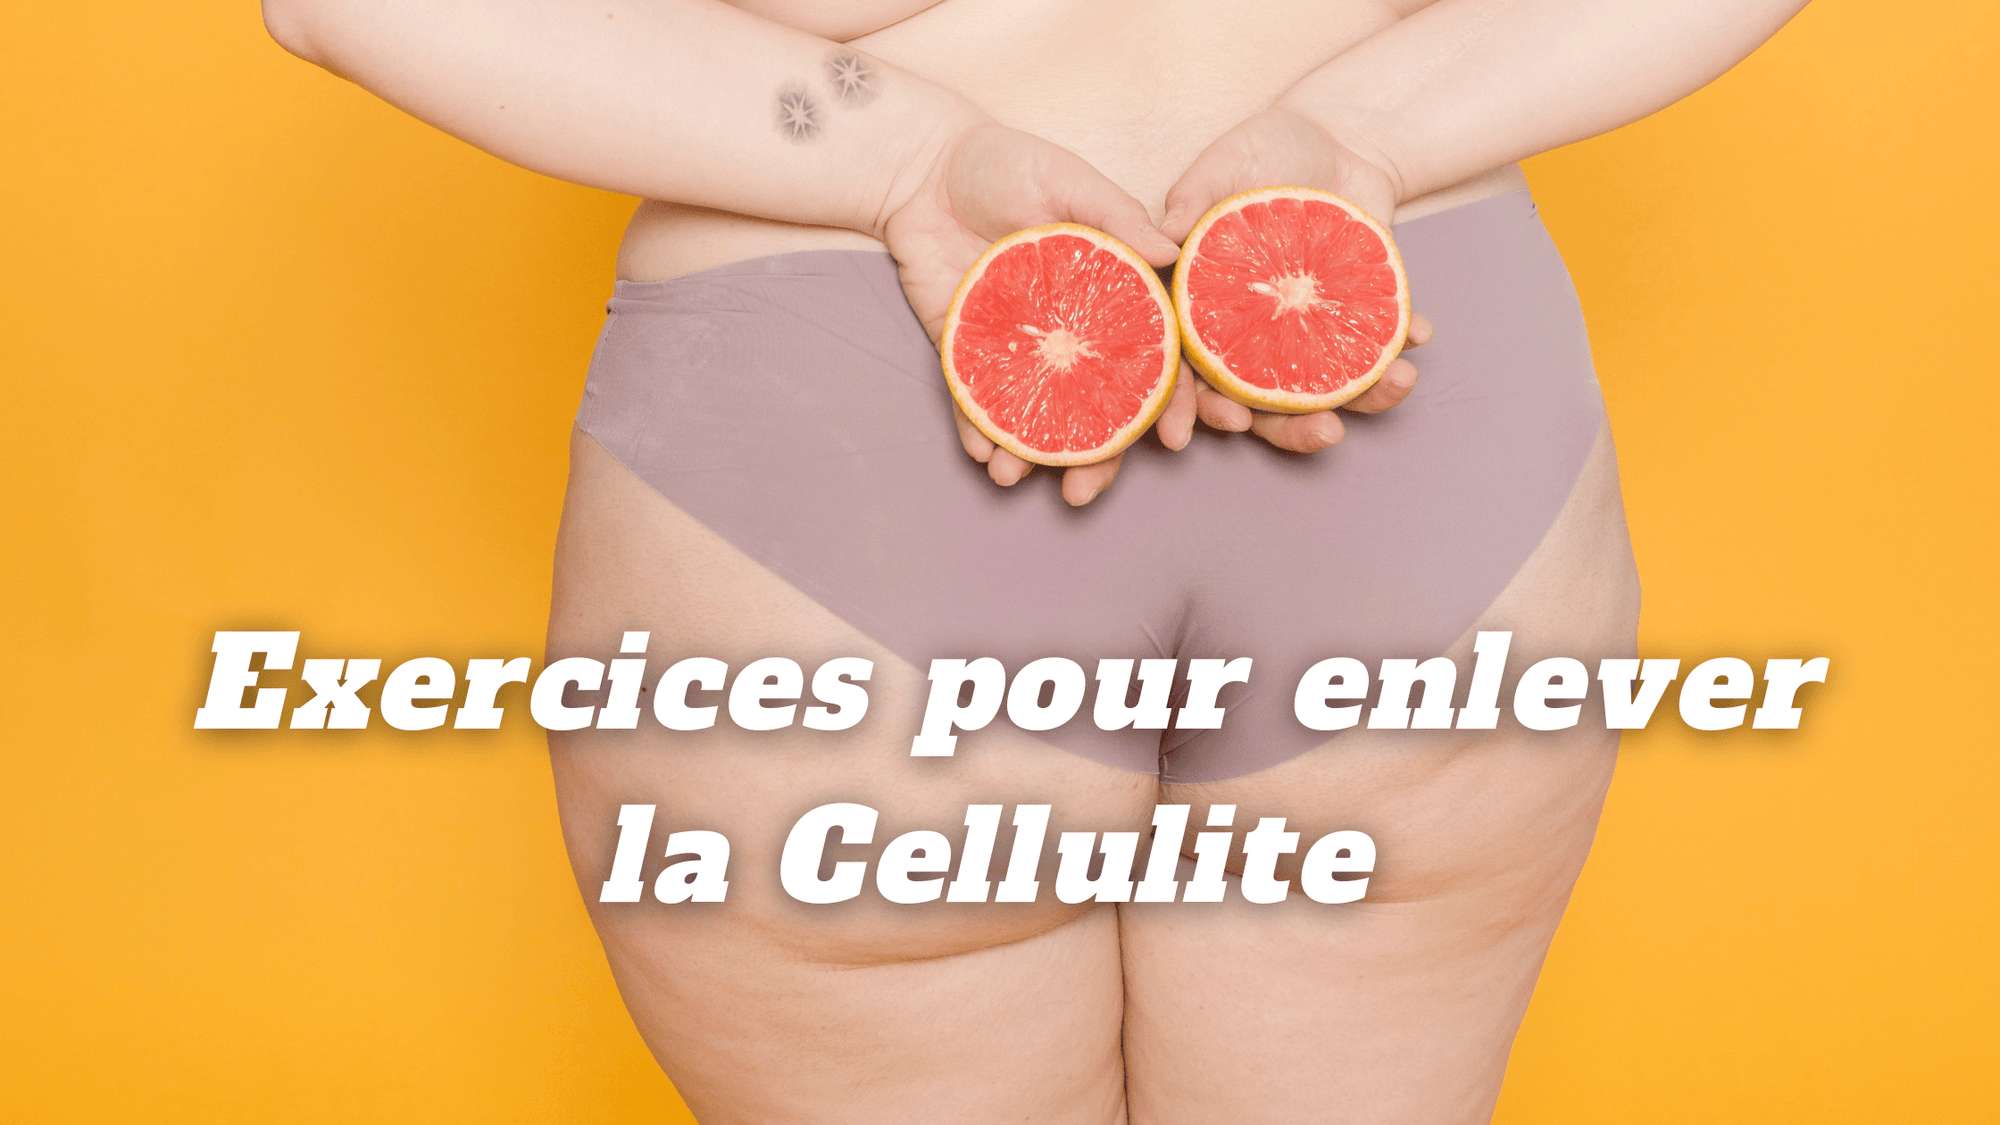  Exercices pour enlever la Cellulite